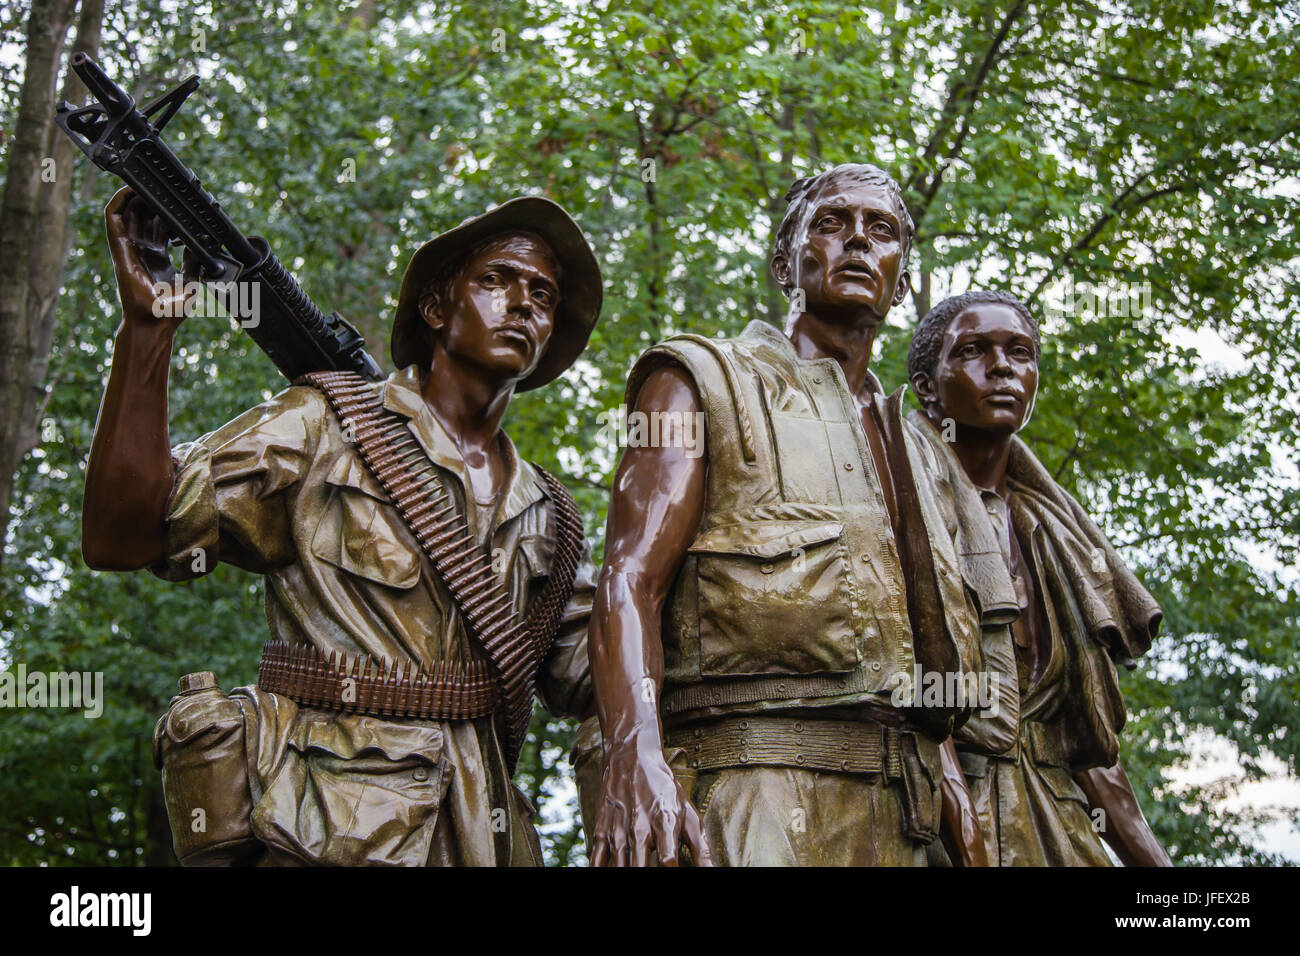 Washington DC, United States of America - 20 juin 2009 : "Les trois soldats" statue de Frederick Hart. Situé dans la Vietnam Veterans moi Banque D'Images